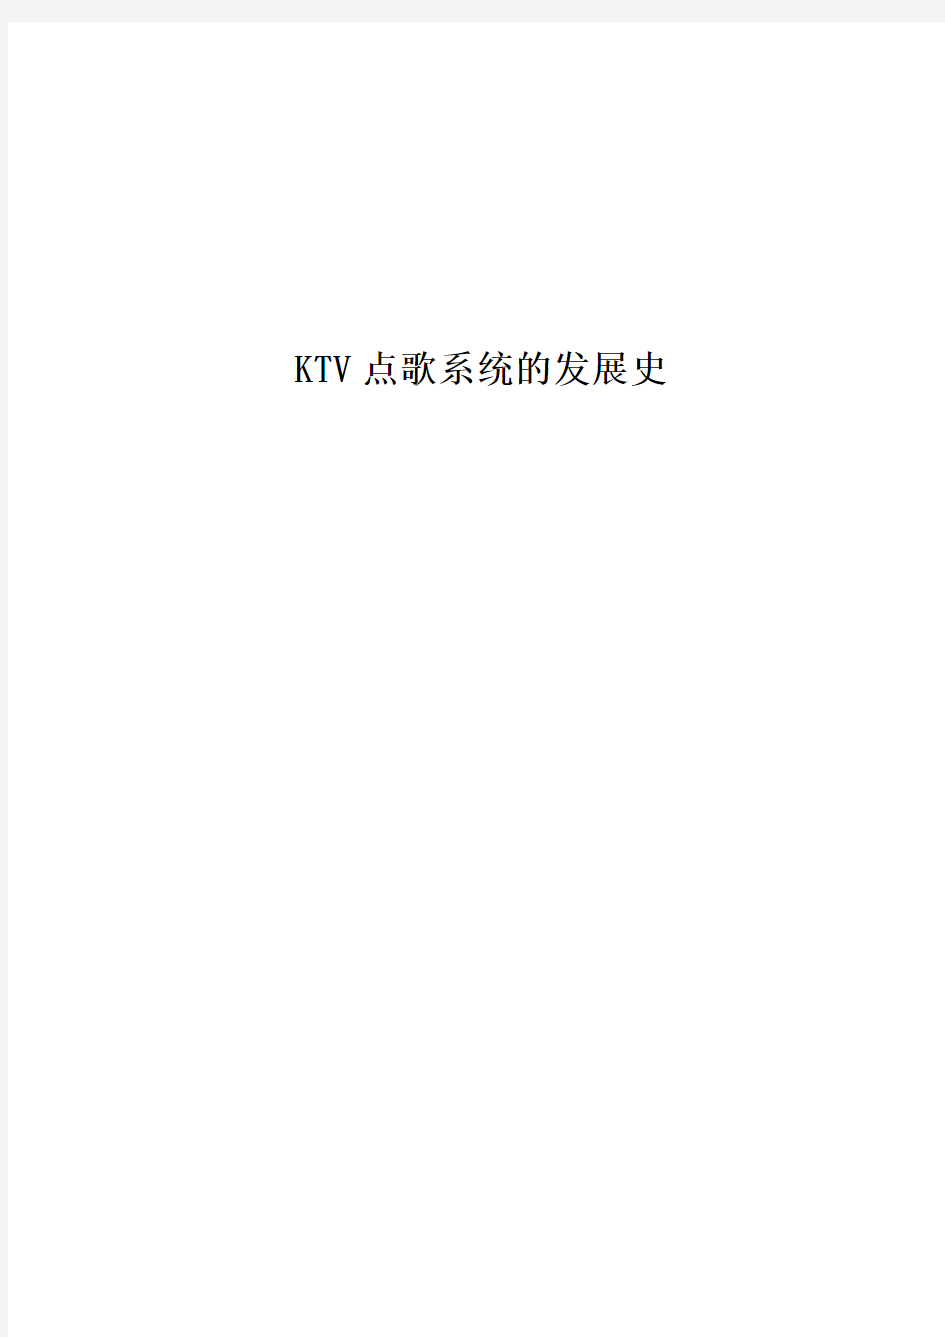 KTV点歌系统发展史